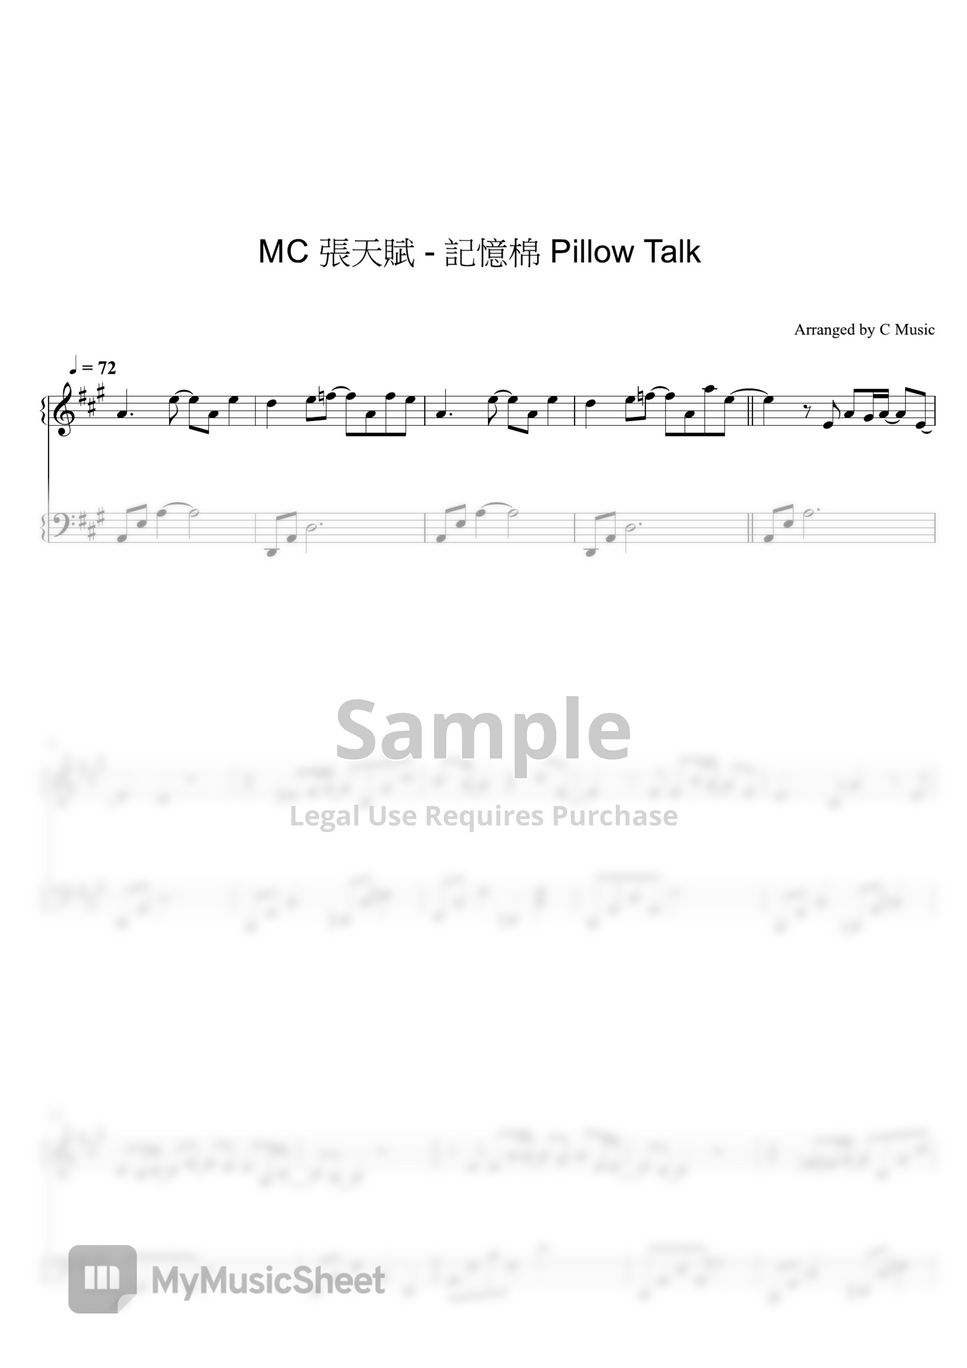 MC 張天賦 - 記憶棉 Pillow Talk by C Music